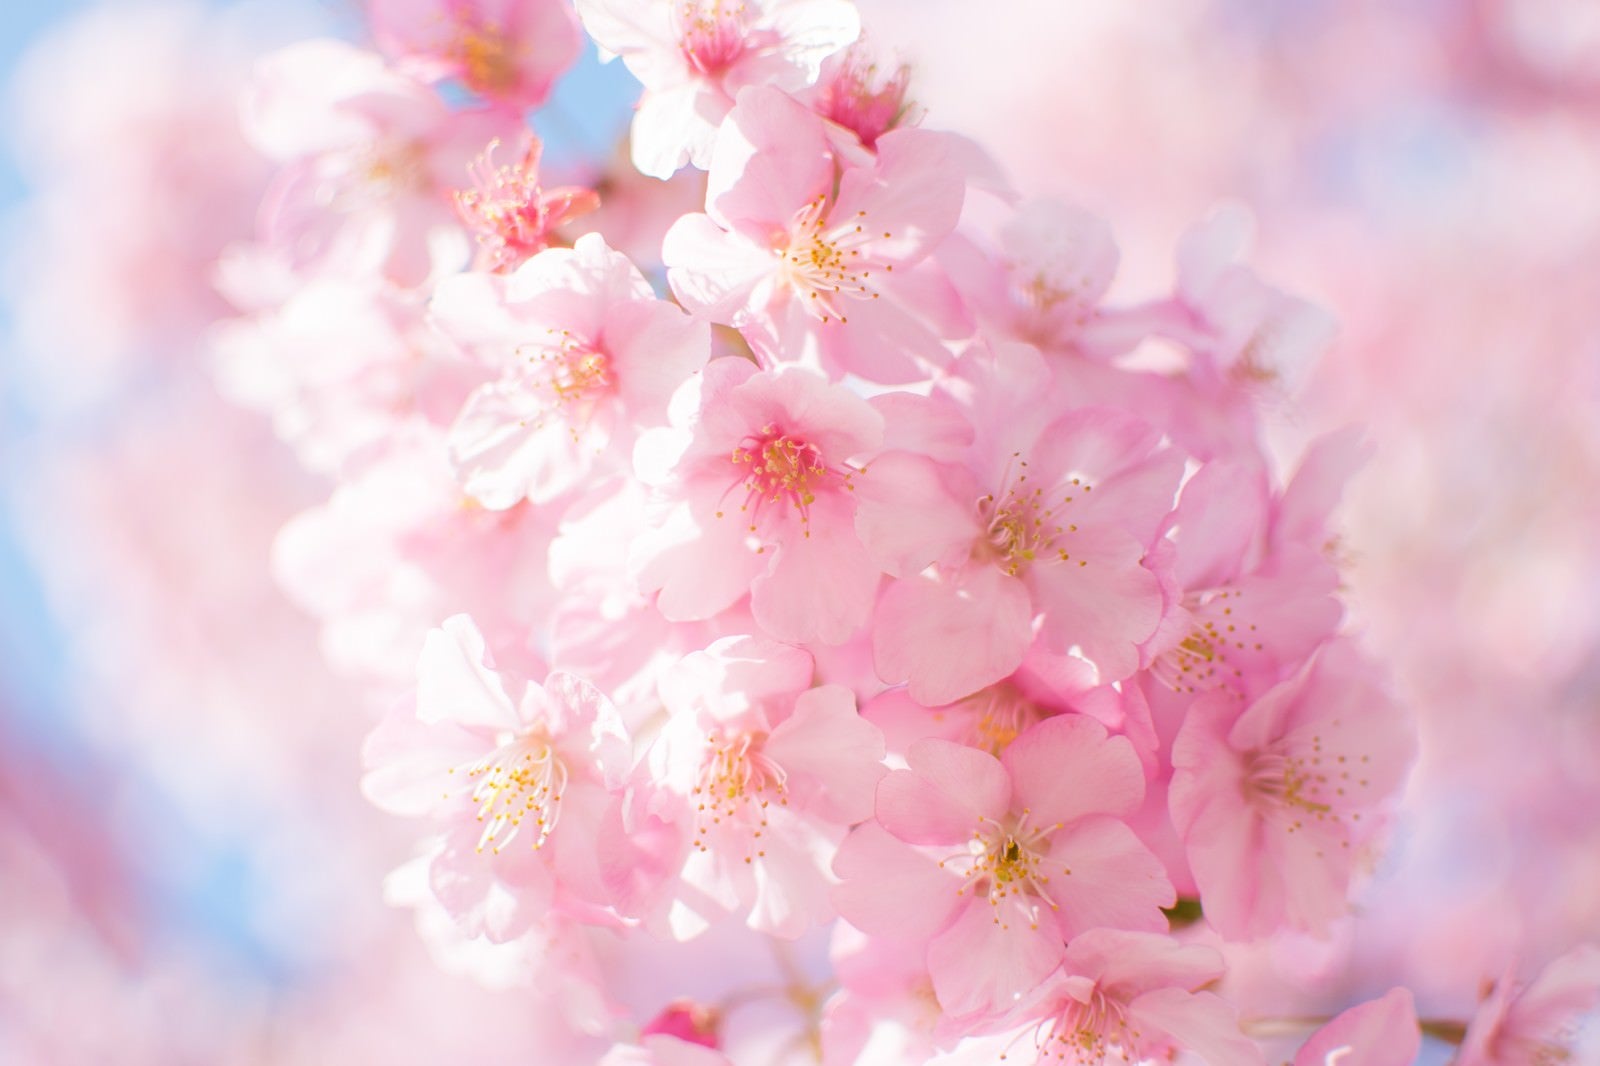 「ピンク色の桜の開花」の写真